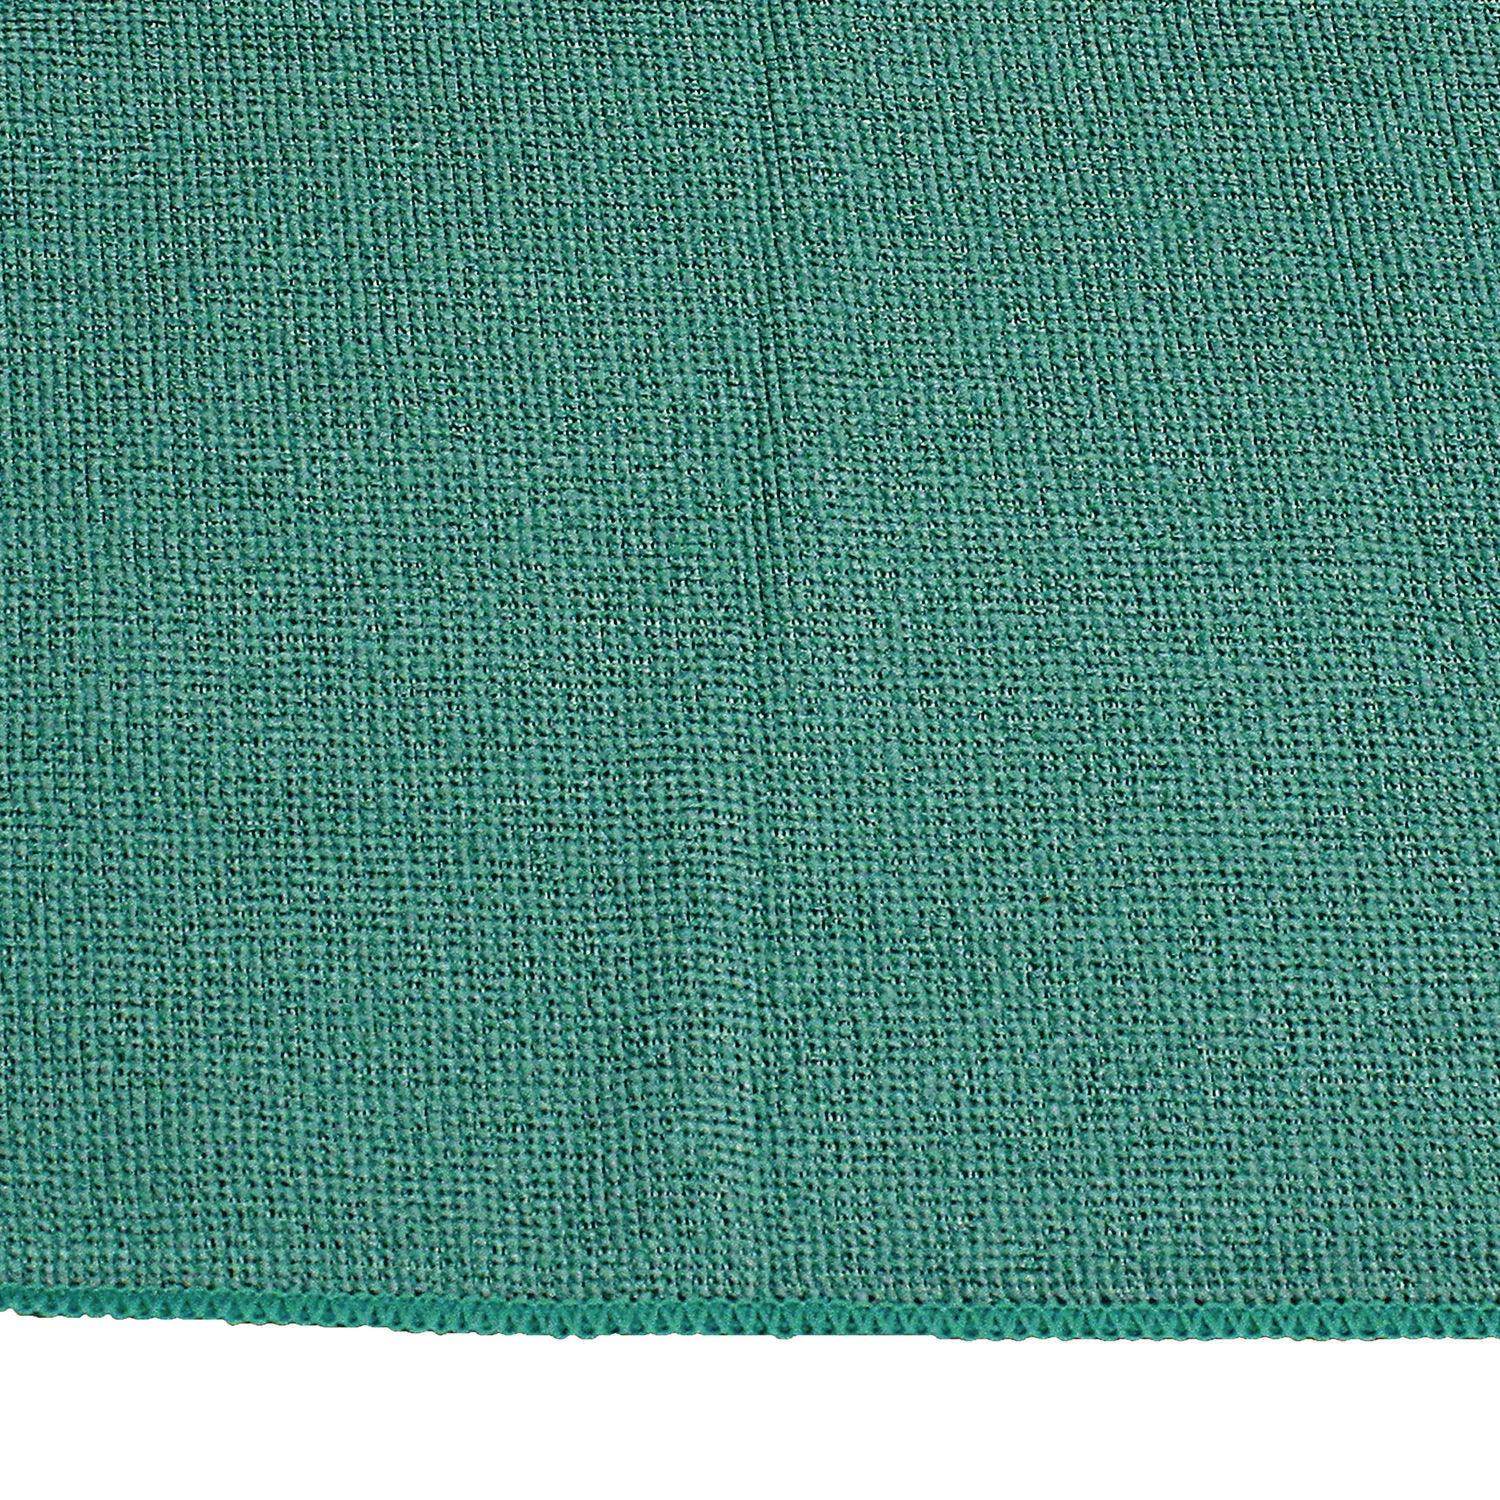 lightweight-microfiber-cloths-16-x-16-green-240-carton_implfk301 - 2